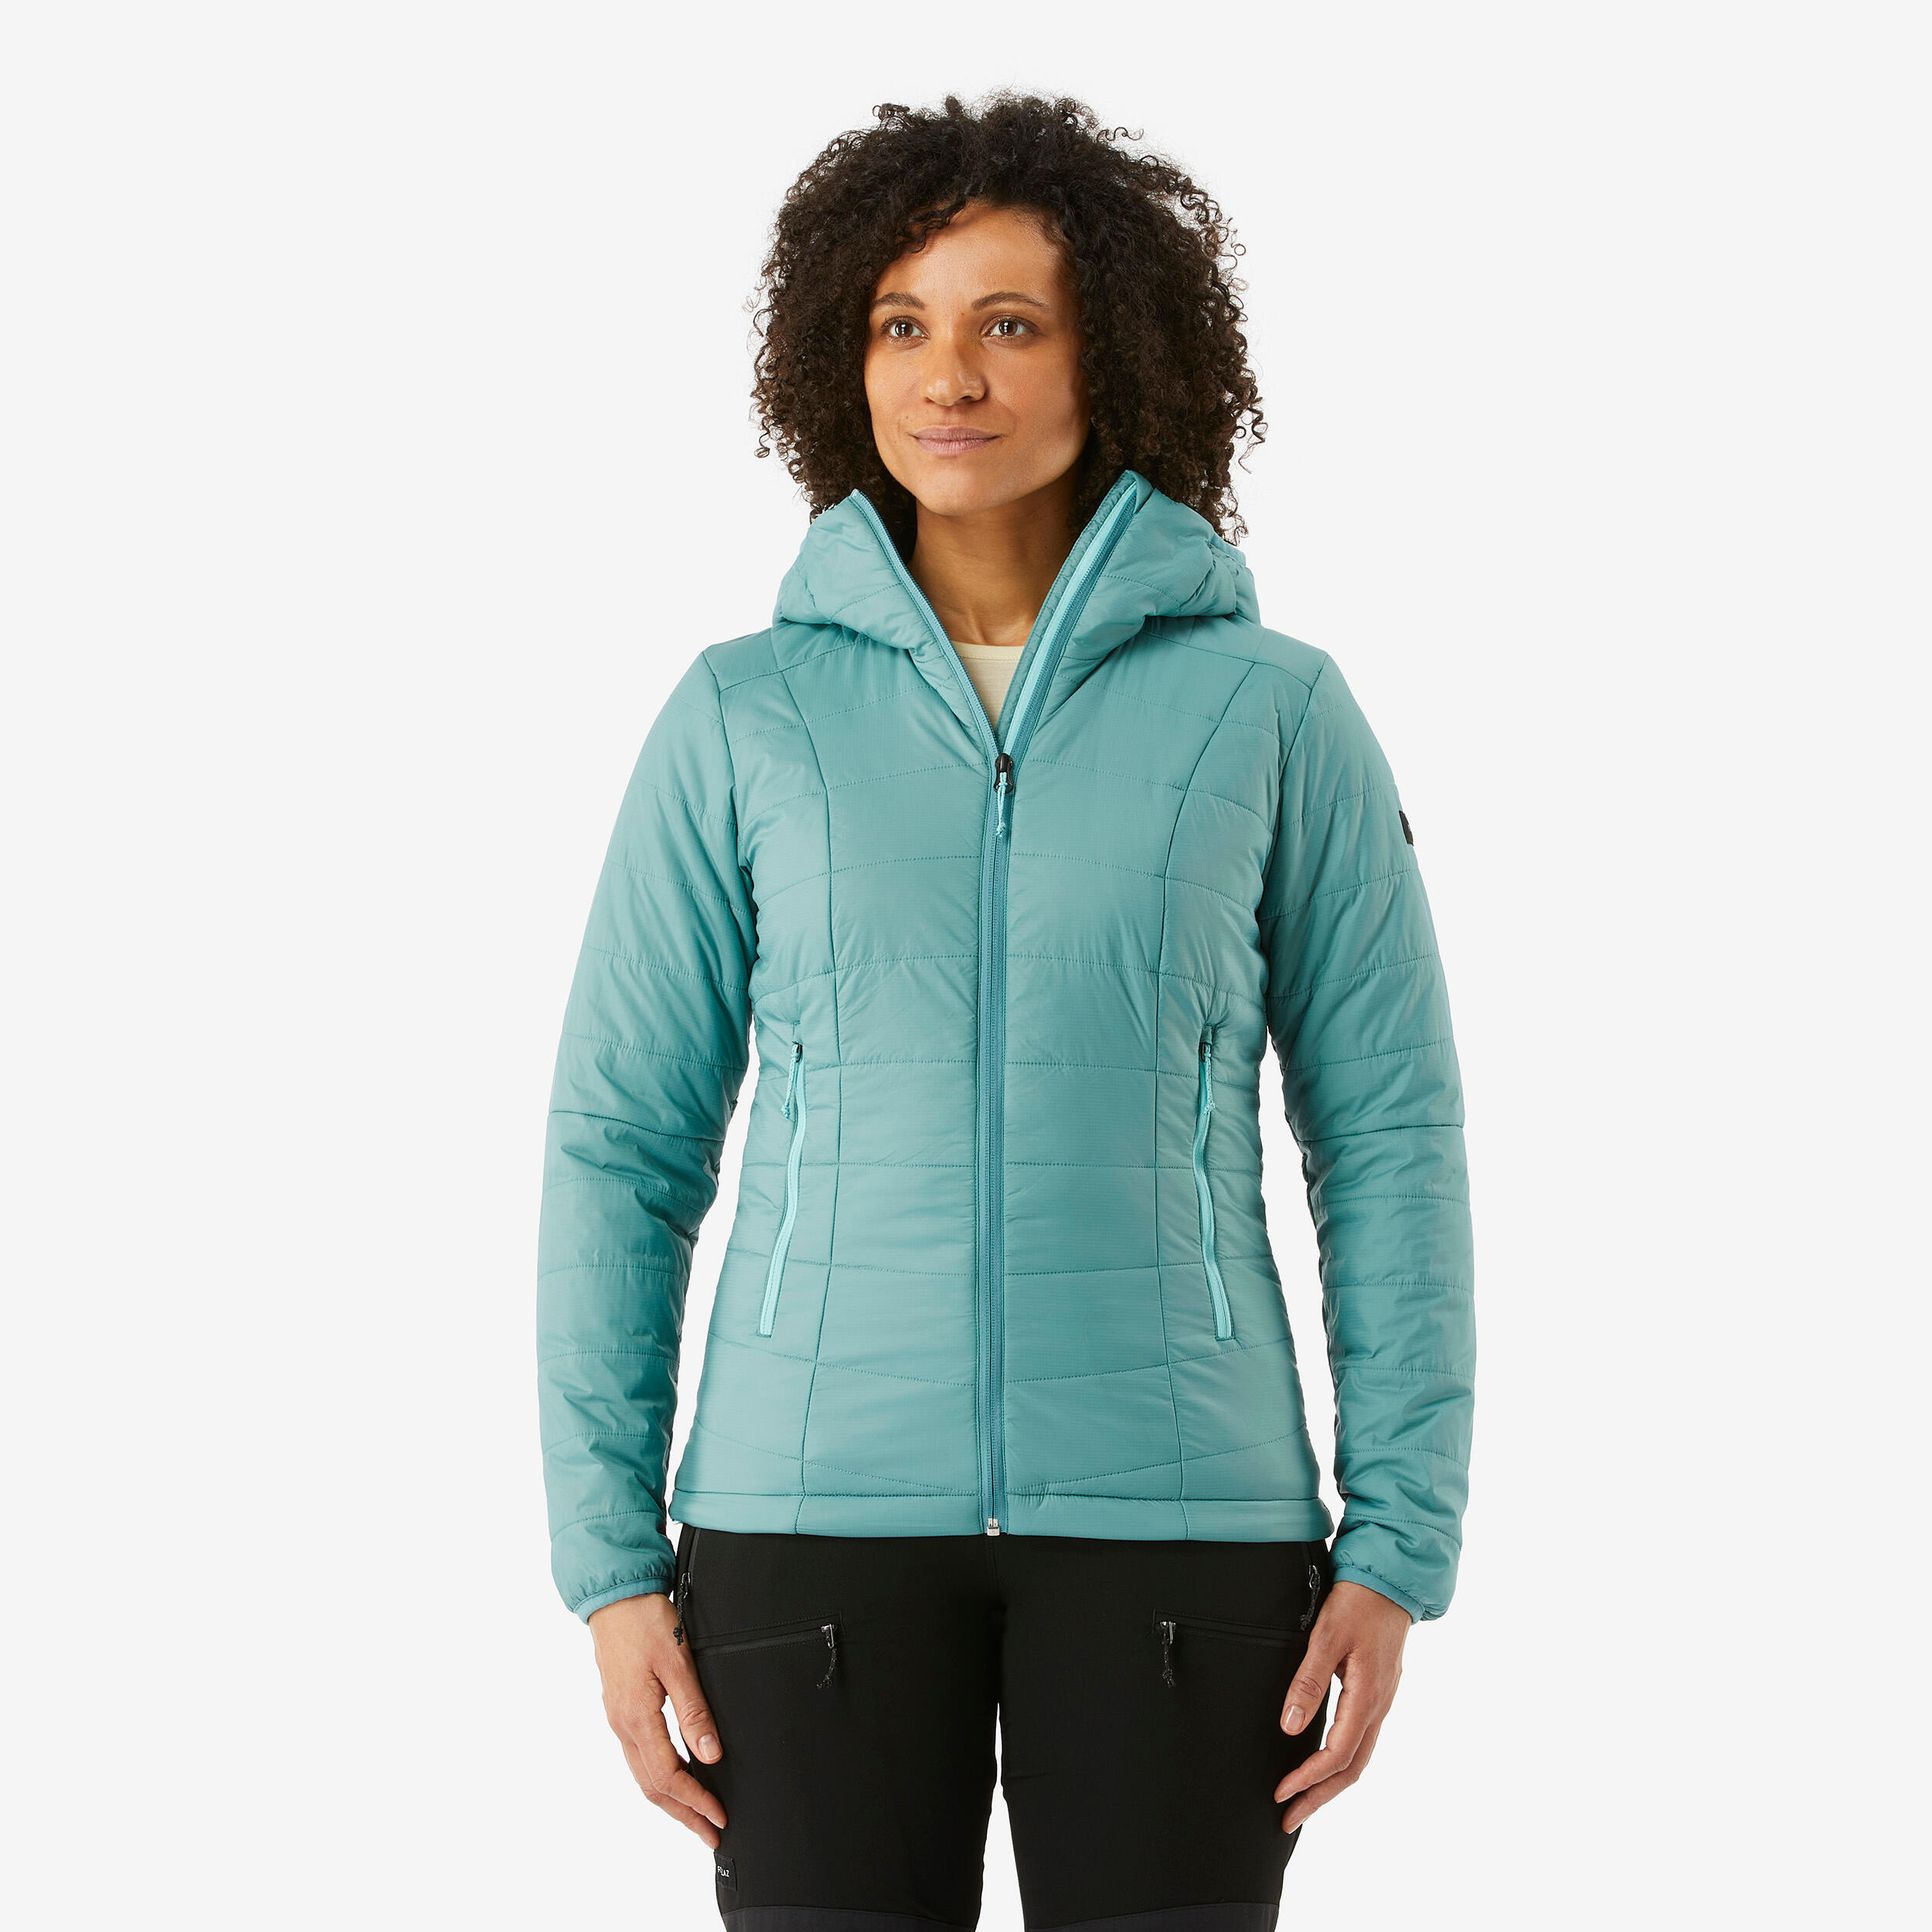 Women's Hiking Fleece Jacket - MH 900 Grey